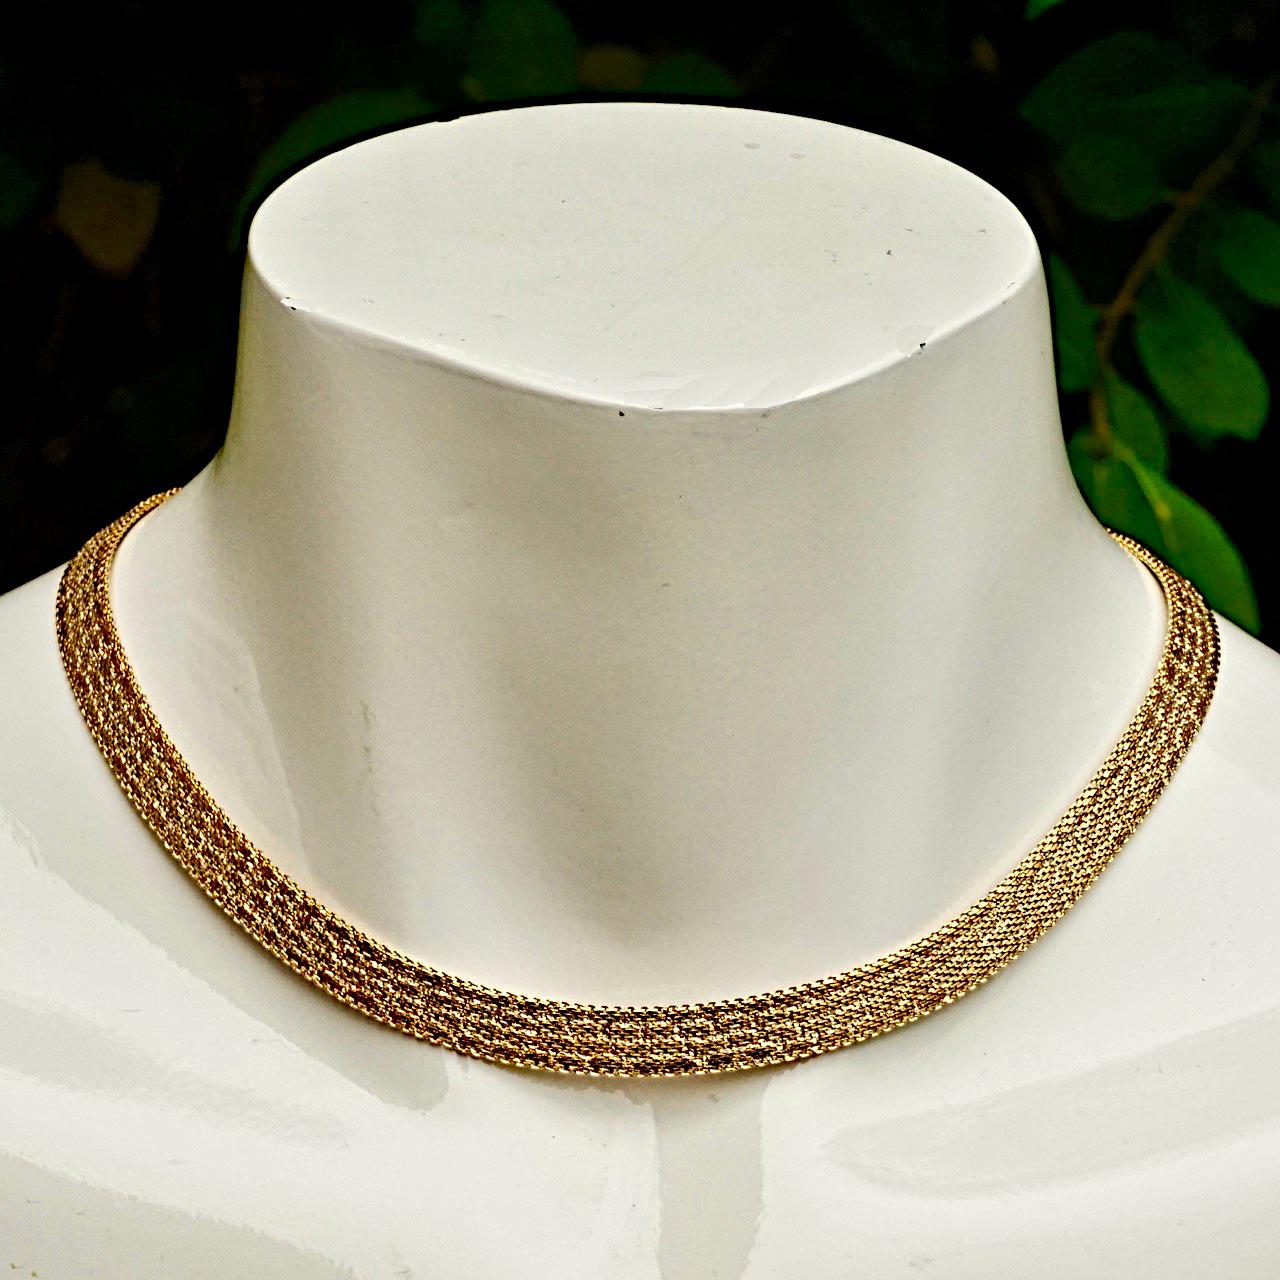 Wunderschöne, glänzend vergoldete Mesh-Halskette mit einem schönen, strukturierten Design und einer Sicherheitskette. Länge ca. 39,5 cm / 15,5 Zoll bei einer Breite von 8 mm / .3 Zoll. Die Halskette ist in sehr gutem Zustand, wie neu.

Dies ist eine